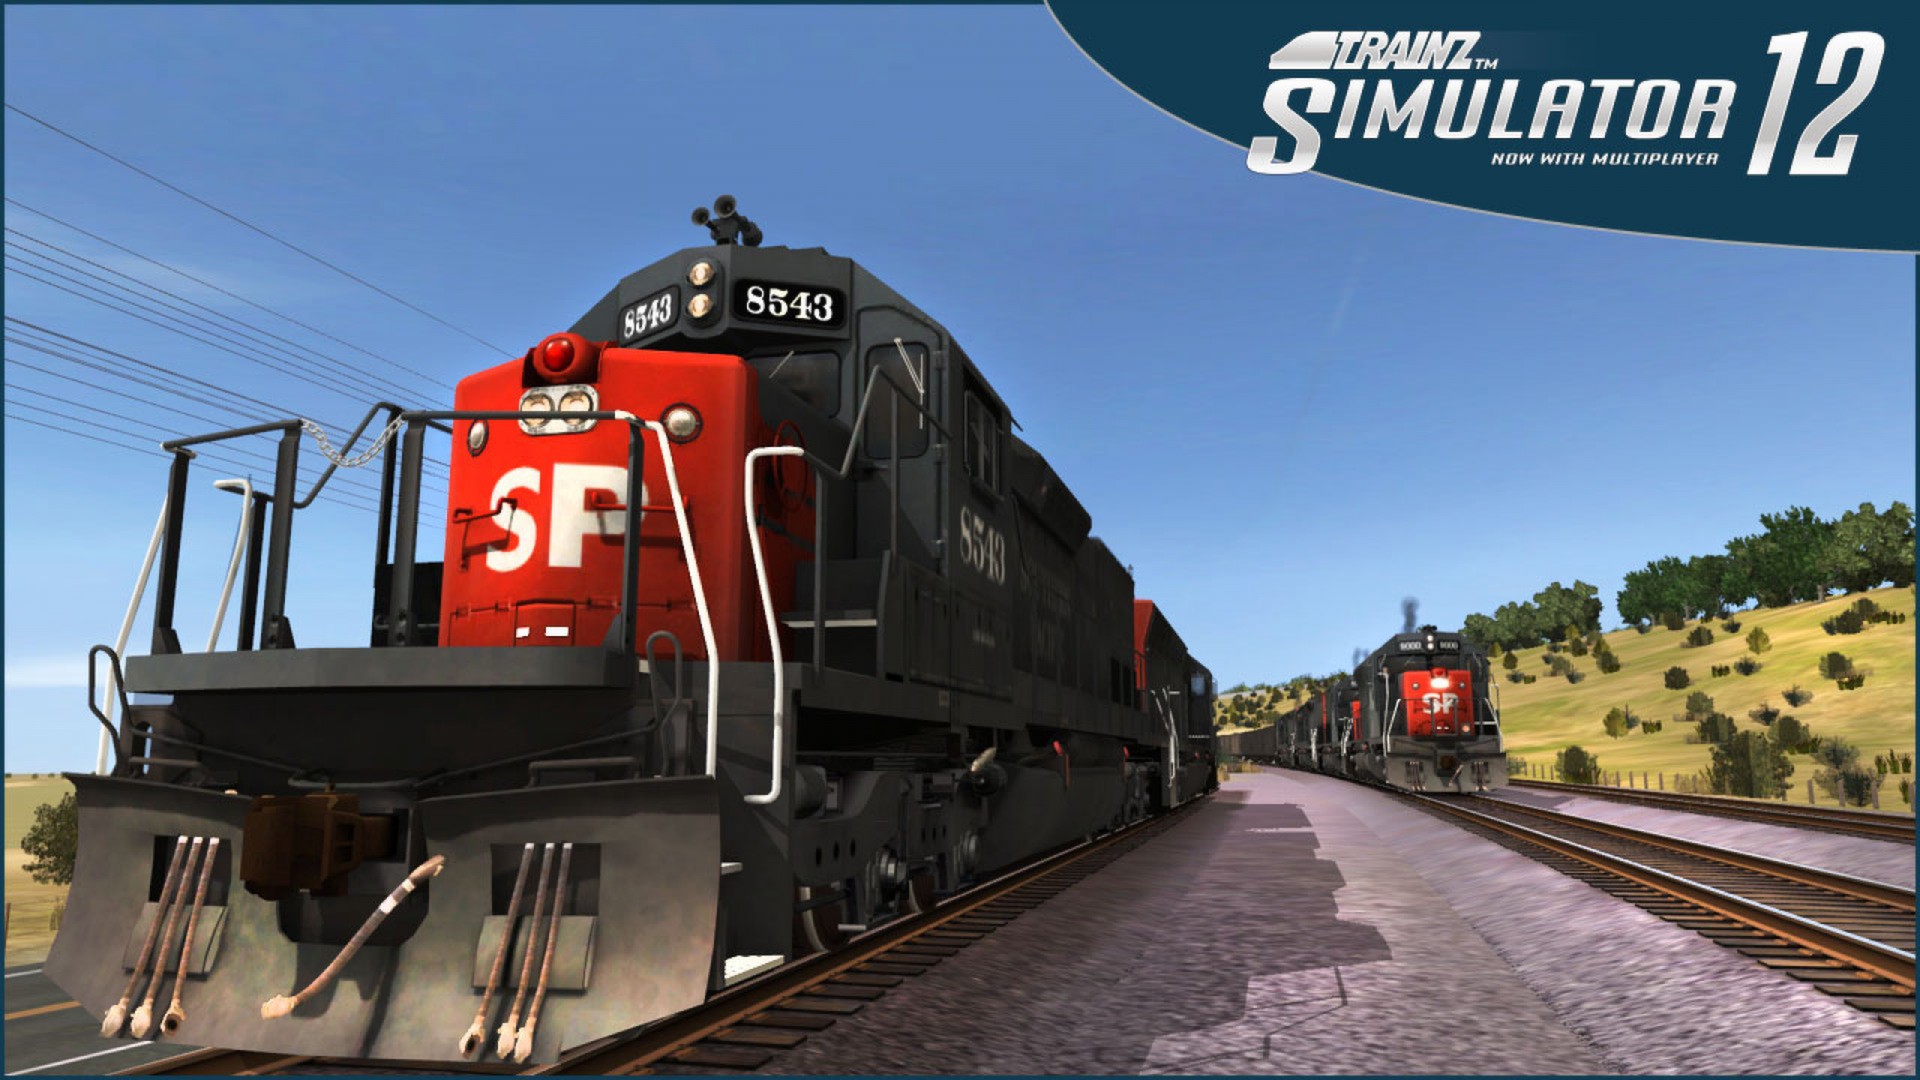 Trainz simulator 12 стиме (120) фото